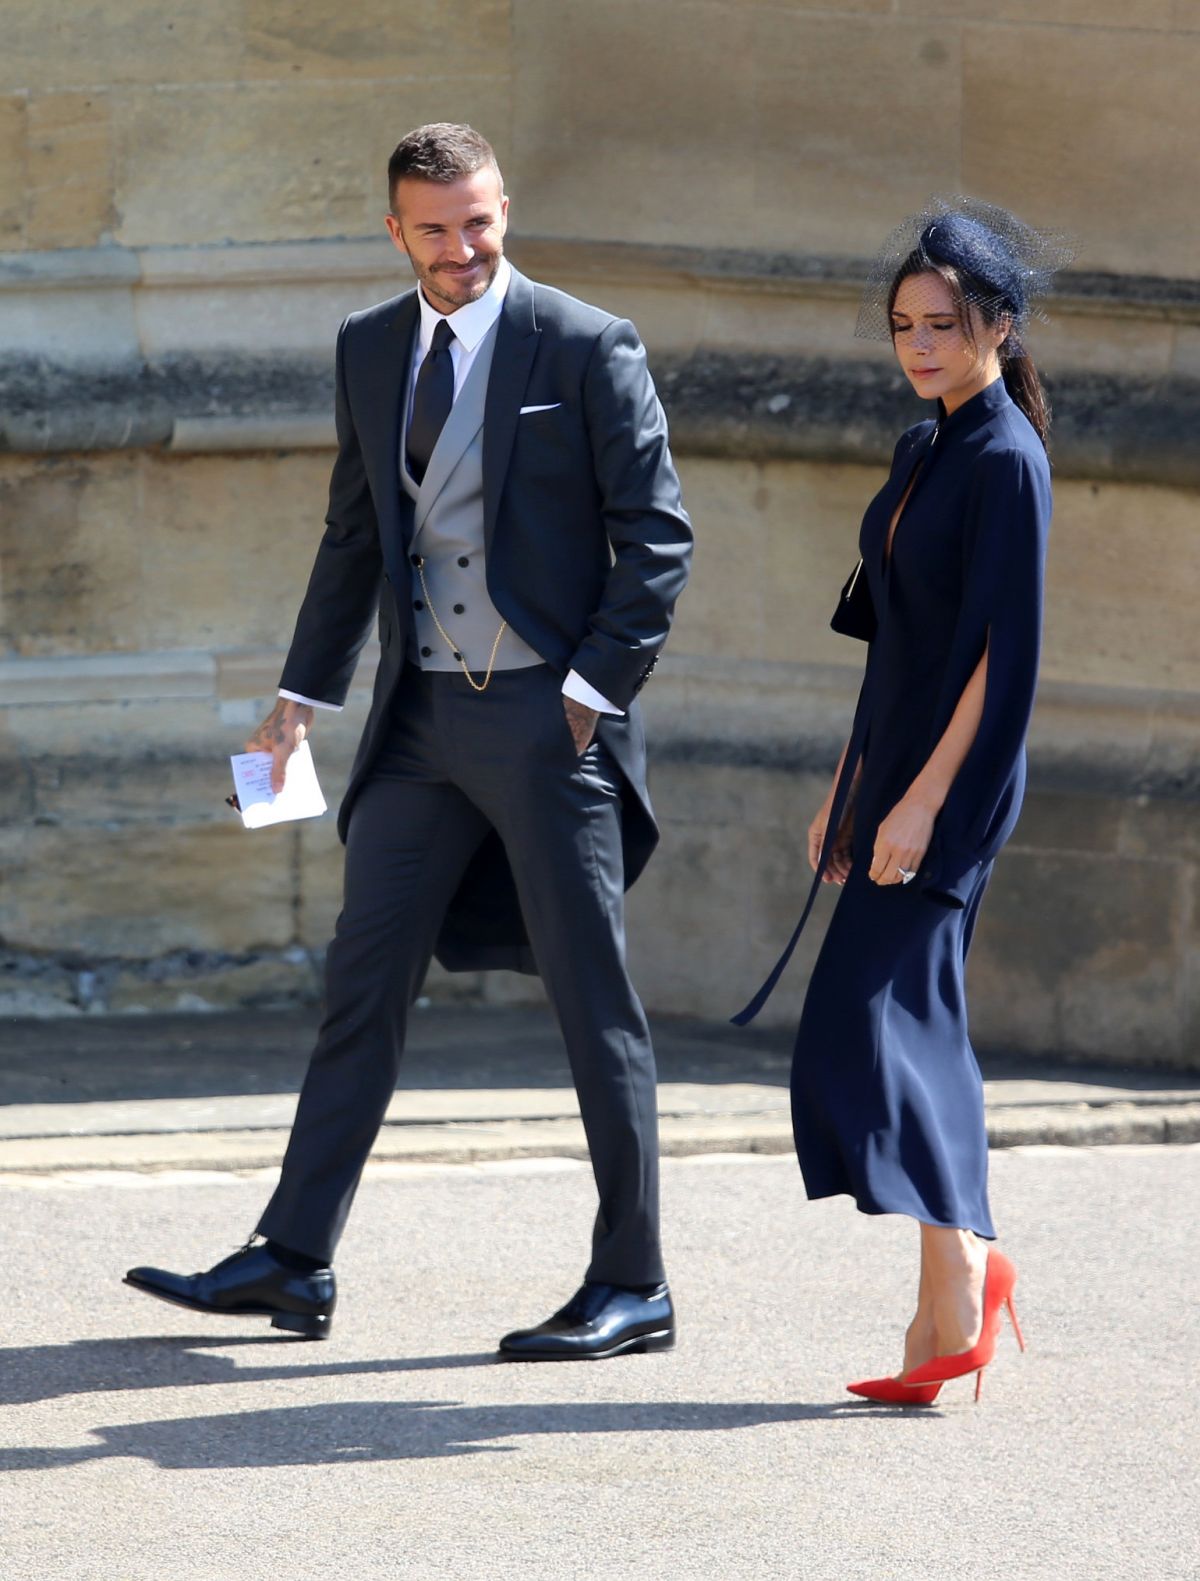 VICTORIA and David BECKHAM Arrives at Royal Wedding at Windsor Castle ...